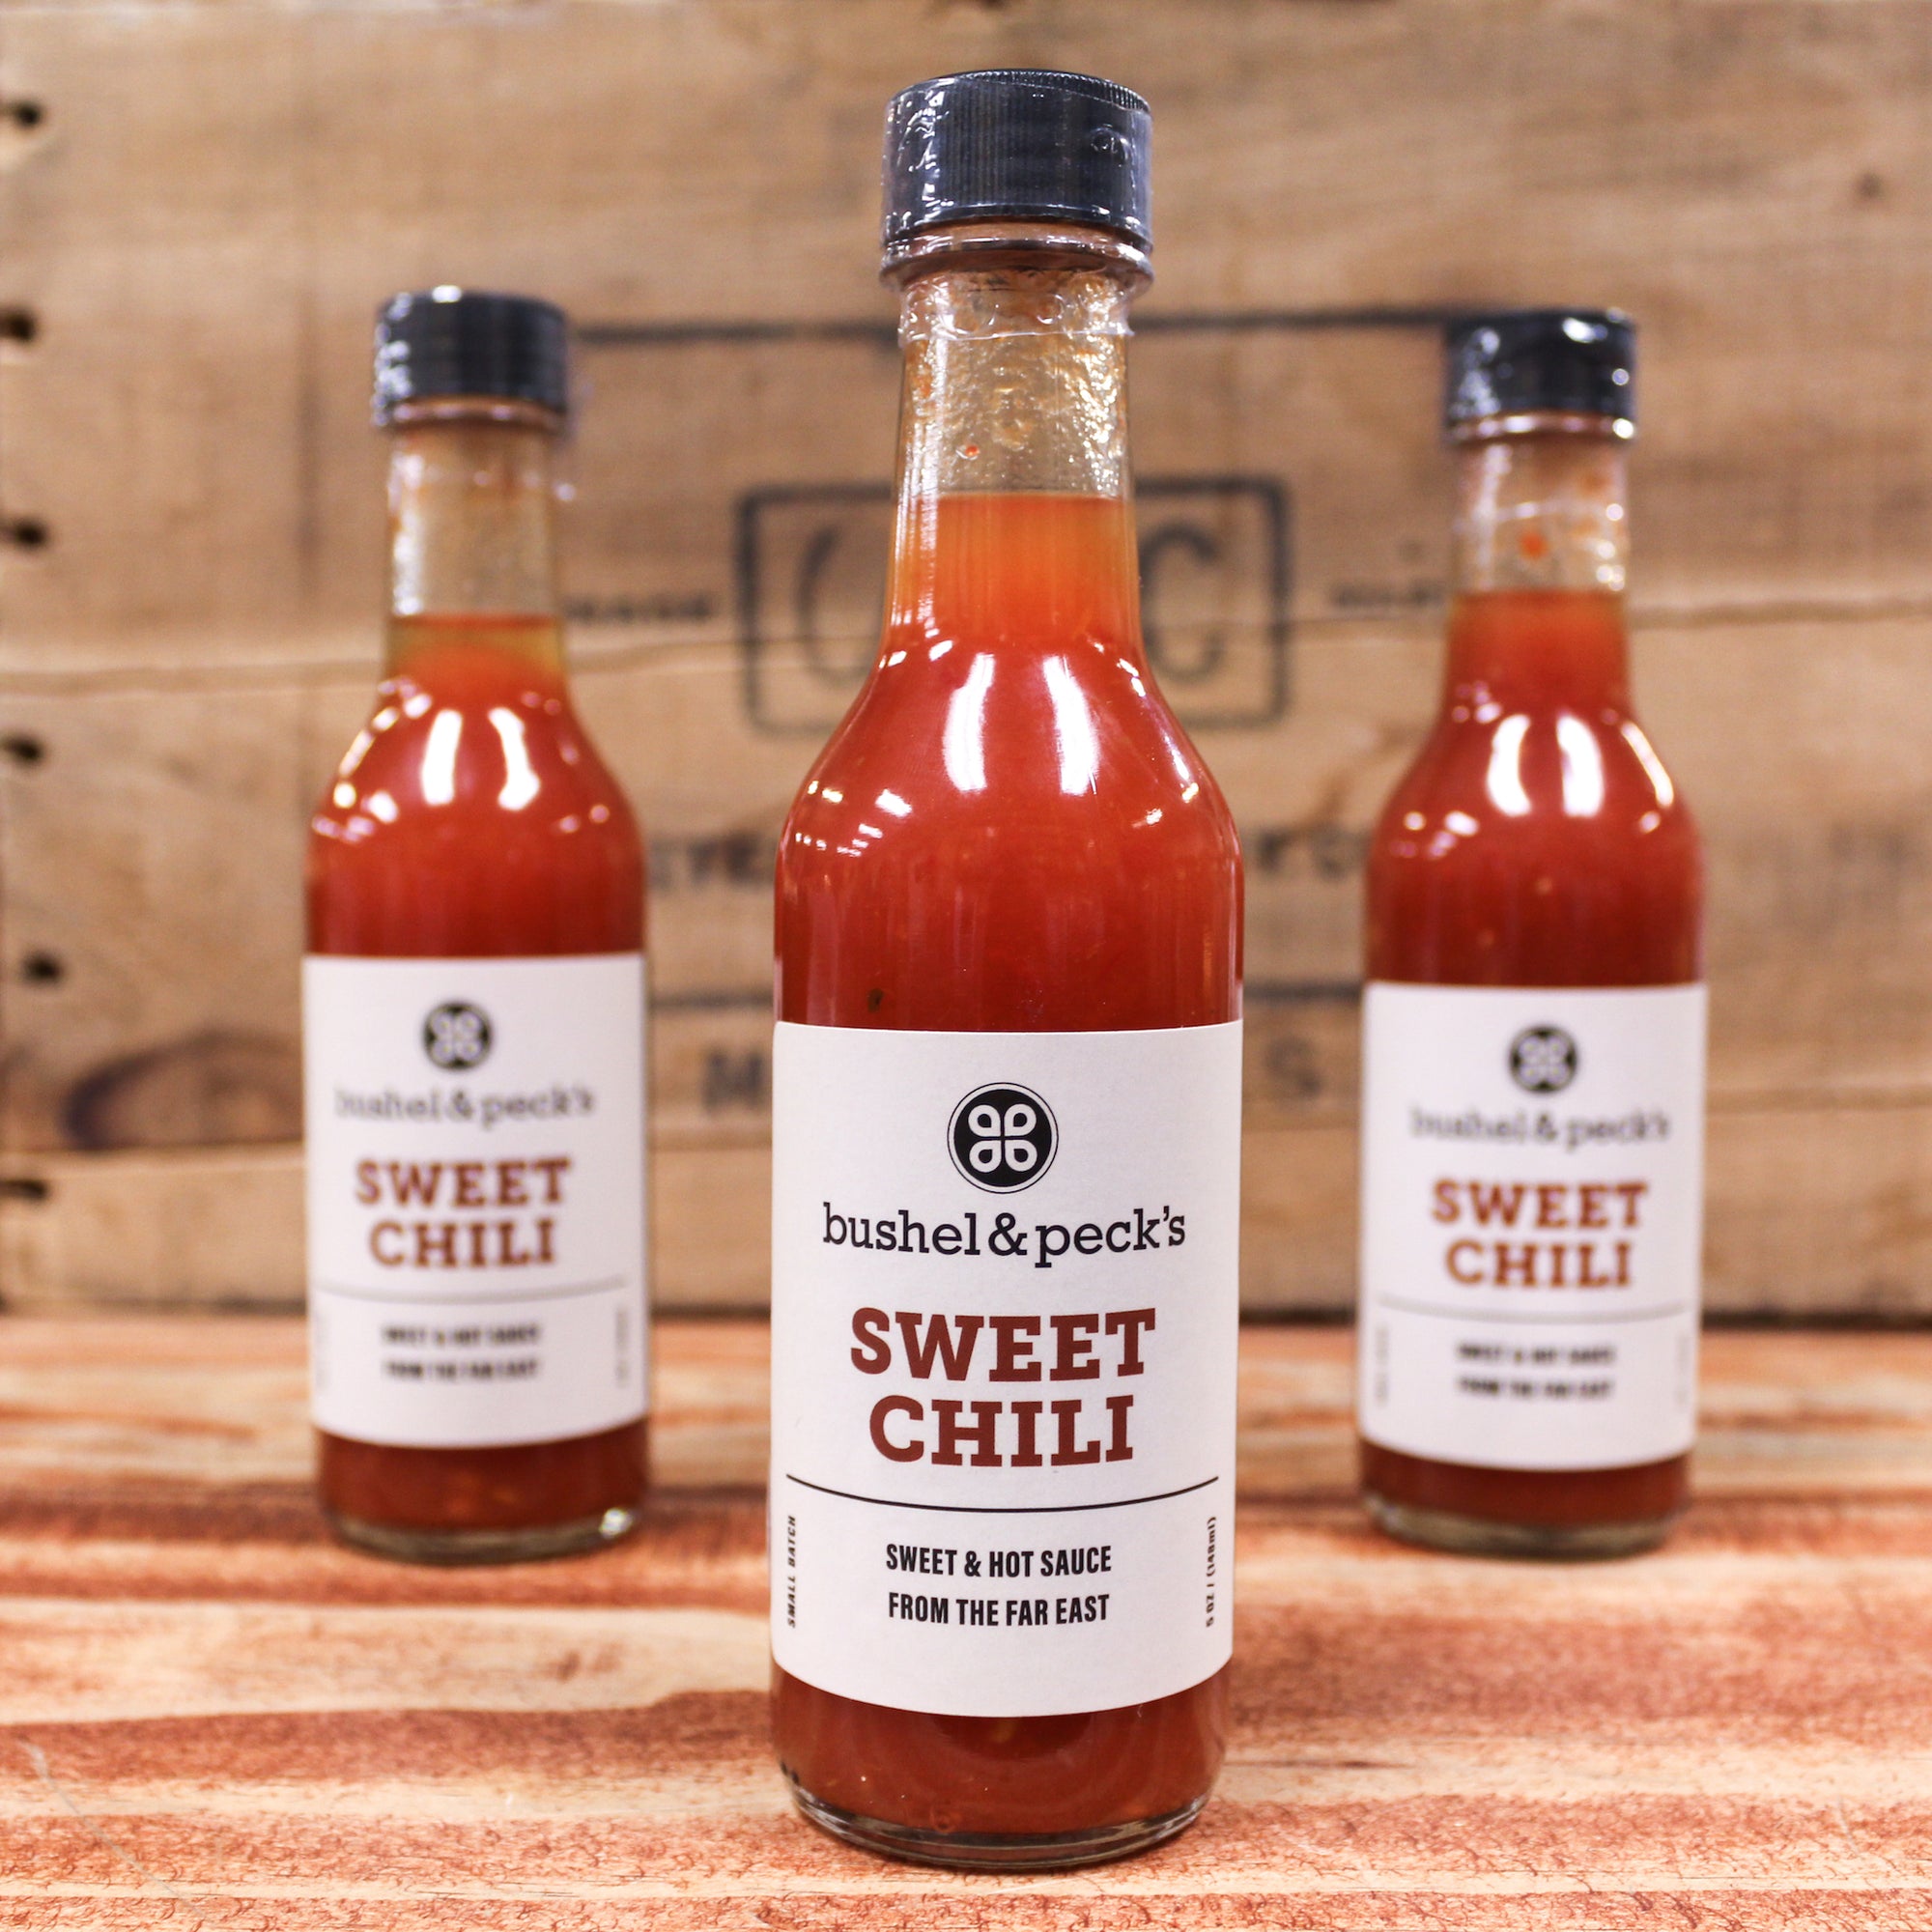 B&P's Sweet Chili Sauce - Three Bottles - Small Batch Handmade